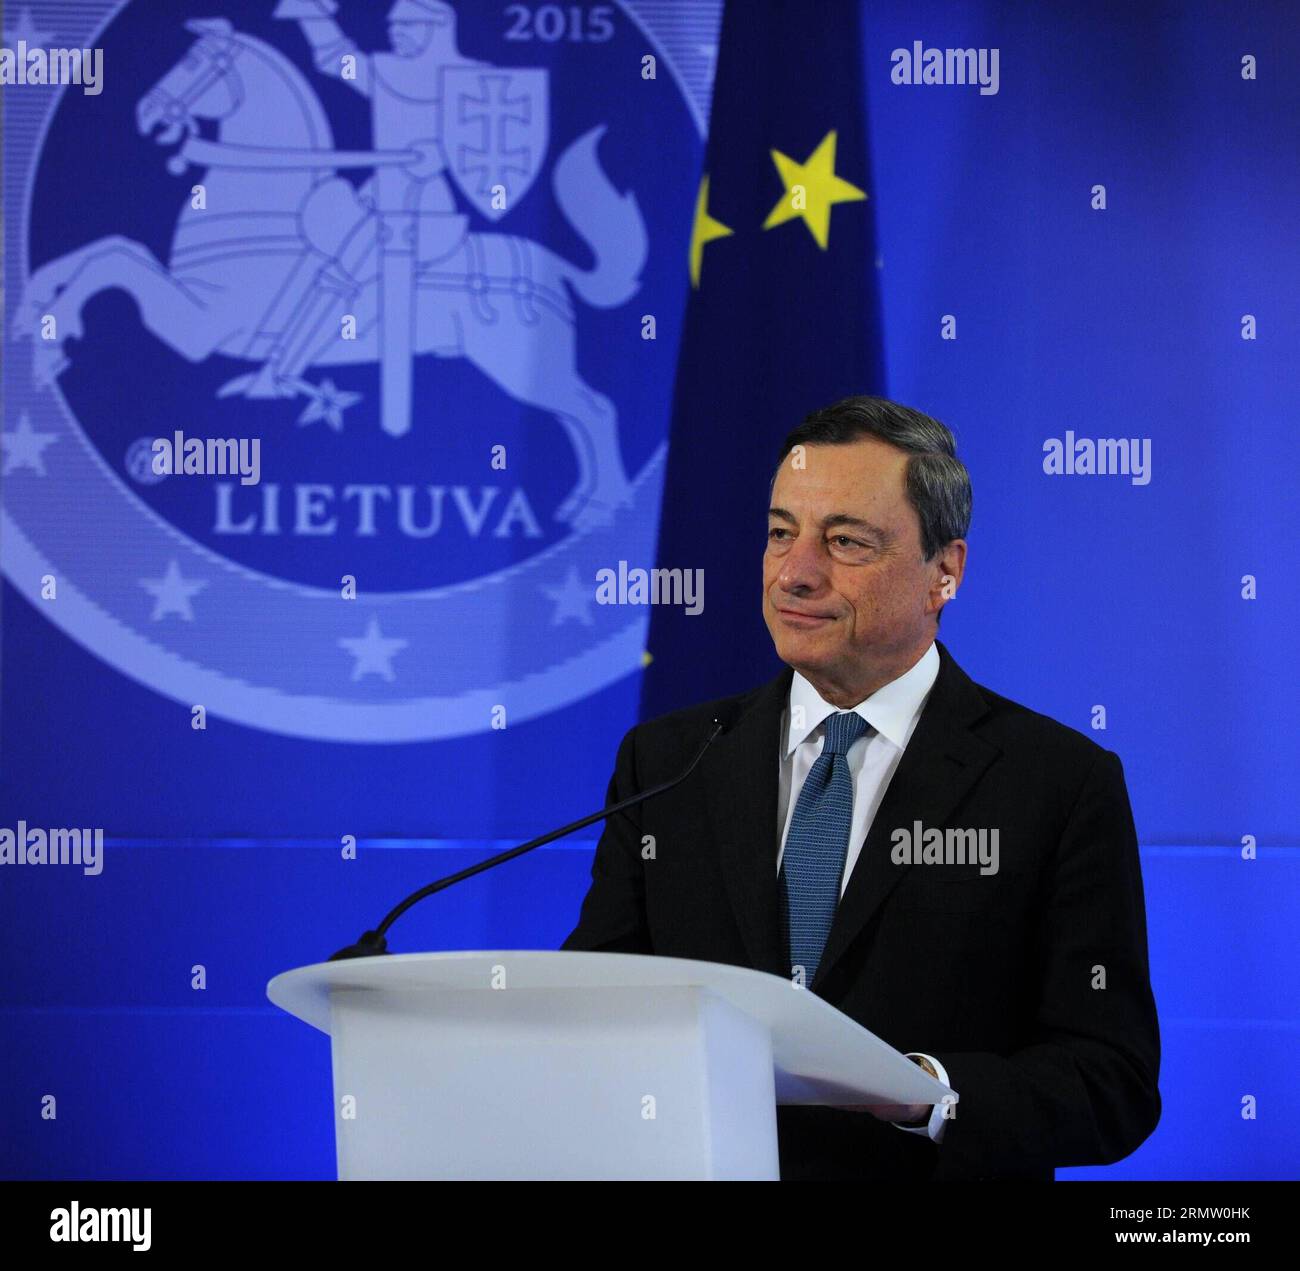 (140925) -- VILNIUS, 25. September 2014 -- der Präsident der Europäischen Zentralbank (EZB) Mario Draghi spricht am 25. September 2014 in Vilnius, Litauen. EZB-Präsident Mario Draghi überreichte hier am Donnerstag einen Euro Star an den Vorsitzenden der litauischen Zentralbank, ein Zeichen, das Litauens Mitgliedschaft im Euro-Währungsgebiet symbolisiert. ) (lmz) LUTHUANIA-VILNIUS-EURO STAR AlfredasxPliadis PUBLICATIONxNOTxINxCHN Vilnius Sept 25 2014 EZB-Präsident Mario Draghi spricht in Vilnius Litauen AM 25 2014. September übergab EZB-Präsident Mario Draghi dem Vorsitzenden Litauens einen Euro-Star Stockfoto